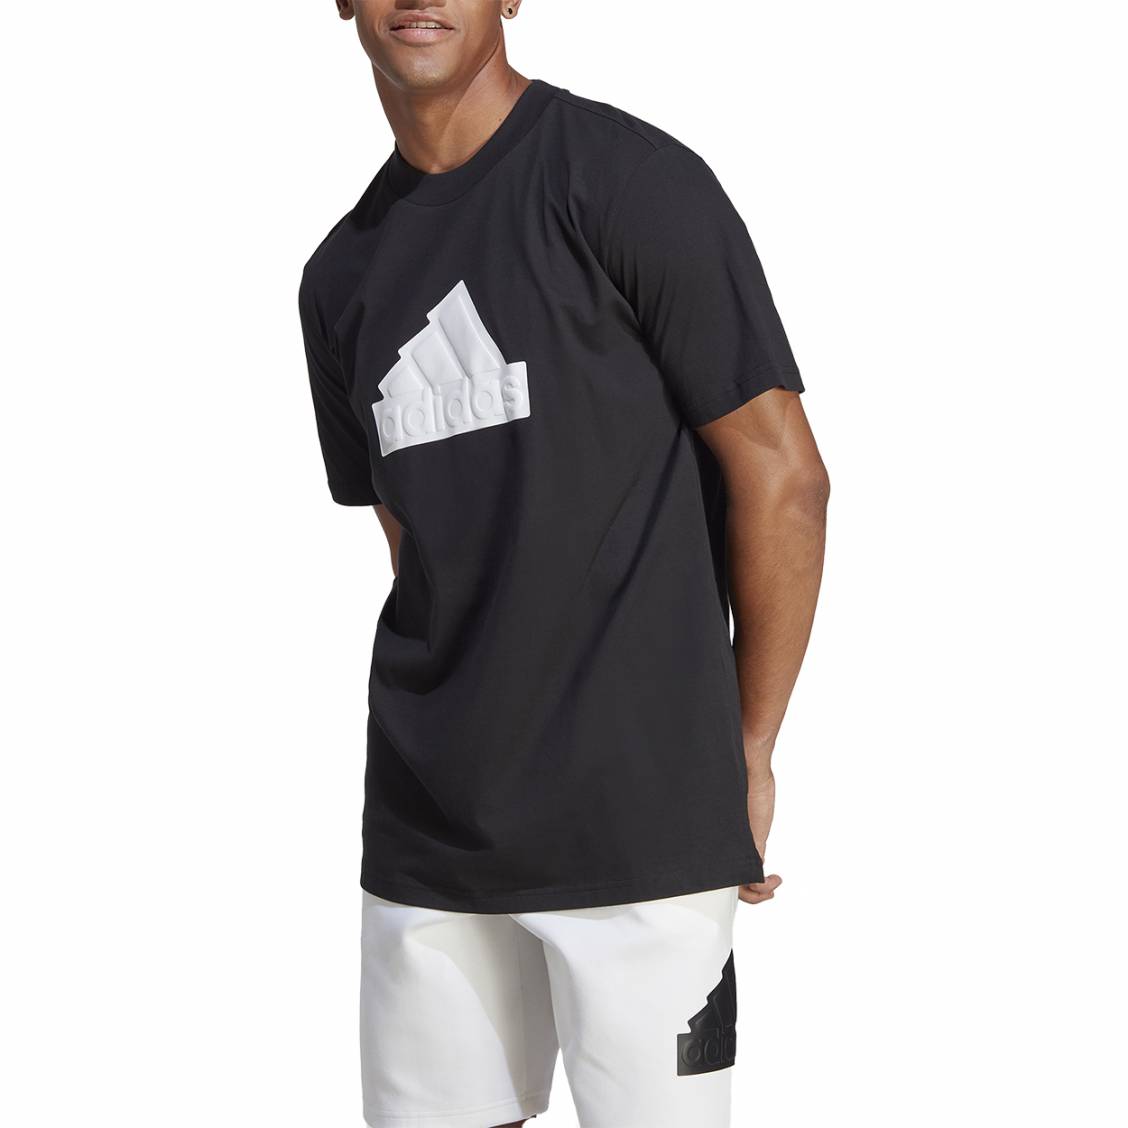 T-Shirt noir homme Adidas Outline Tee pas cher | Espace des Marques